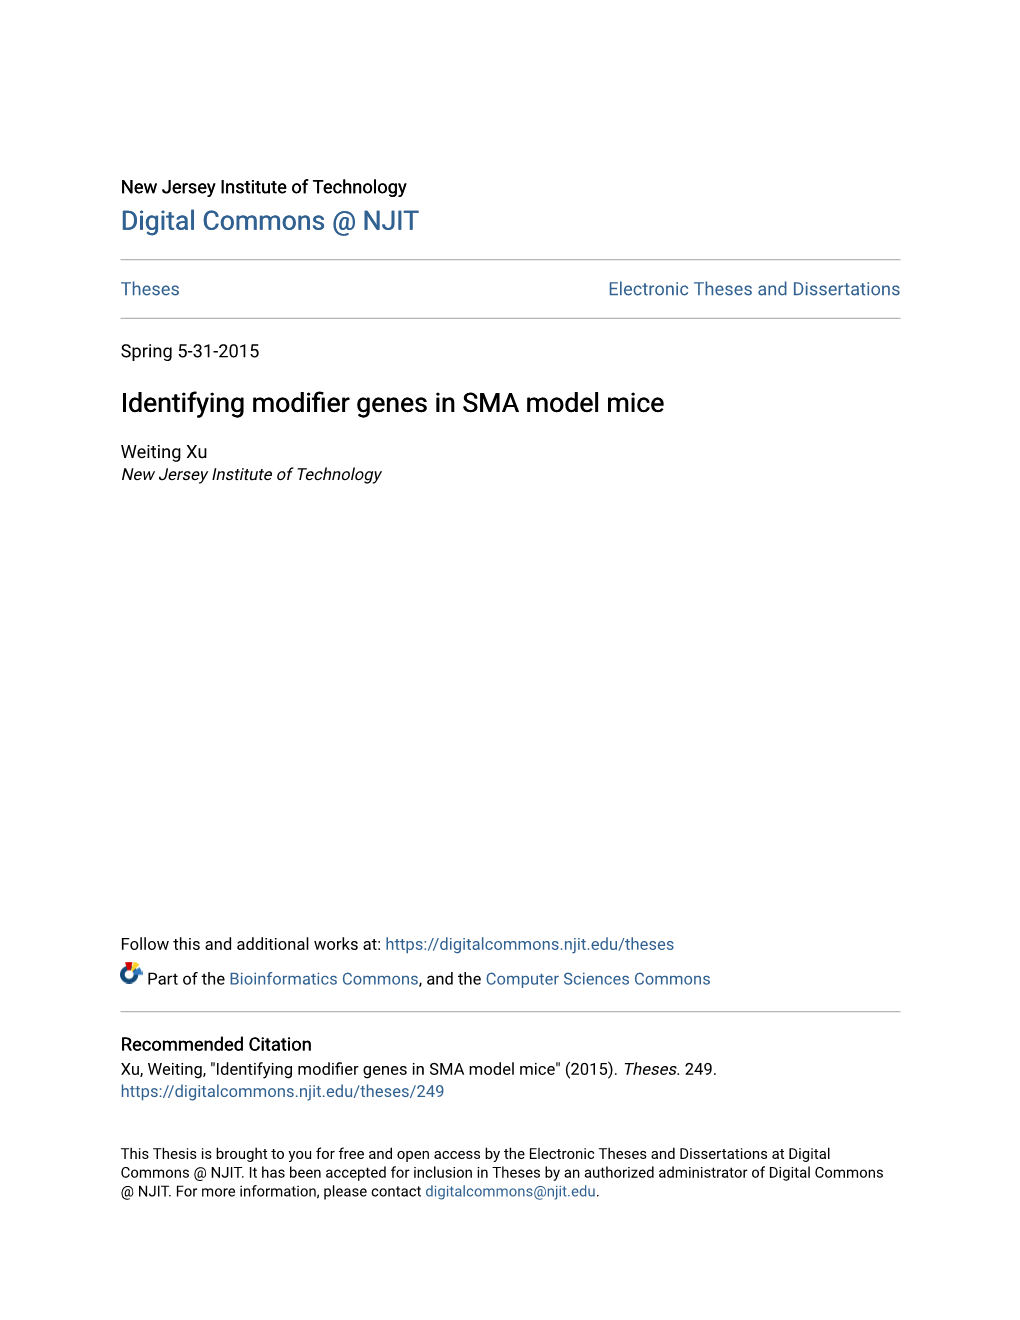 Identifying Modifier Genes in SMA Model Mice